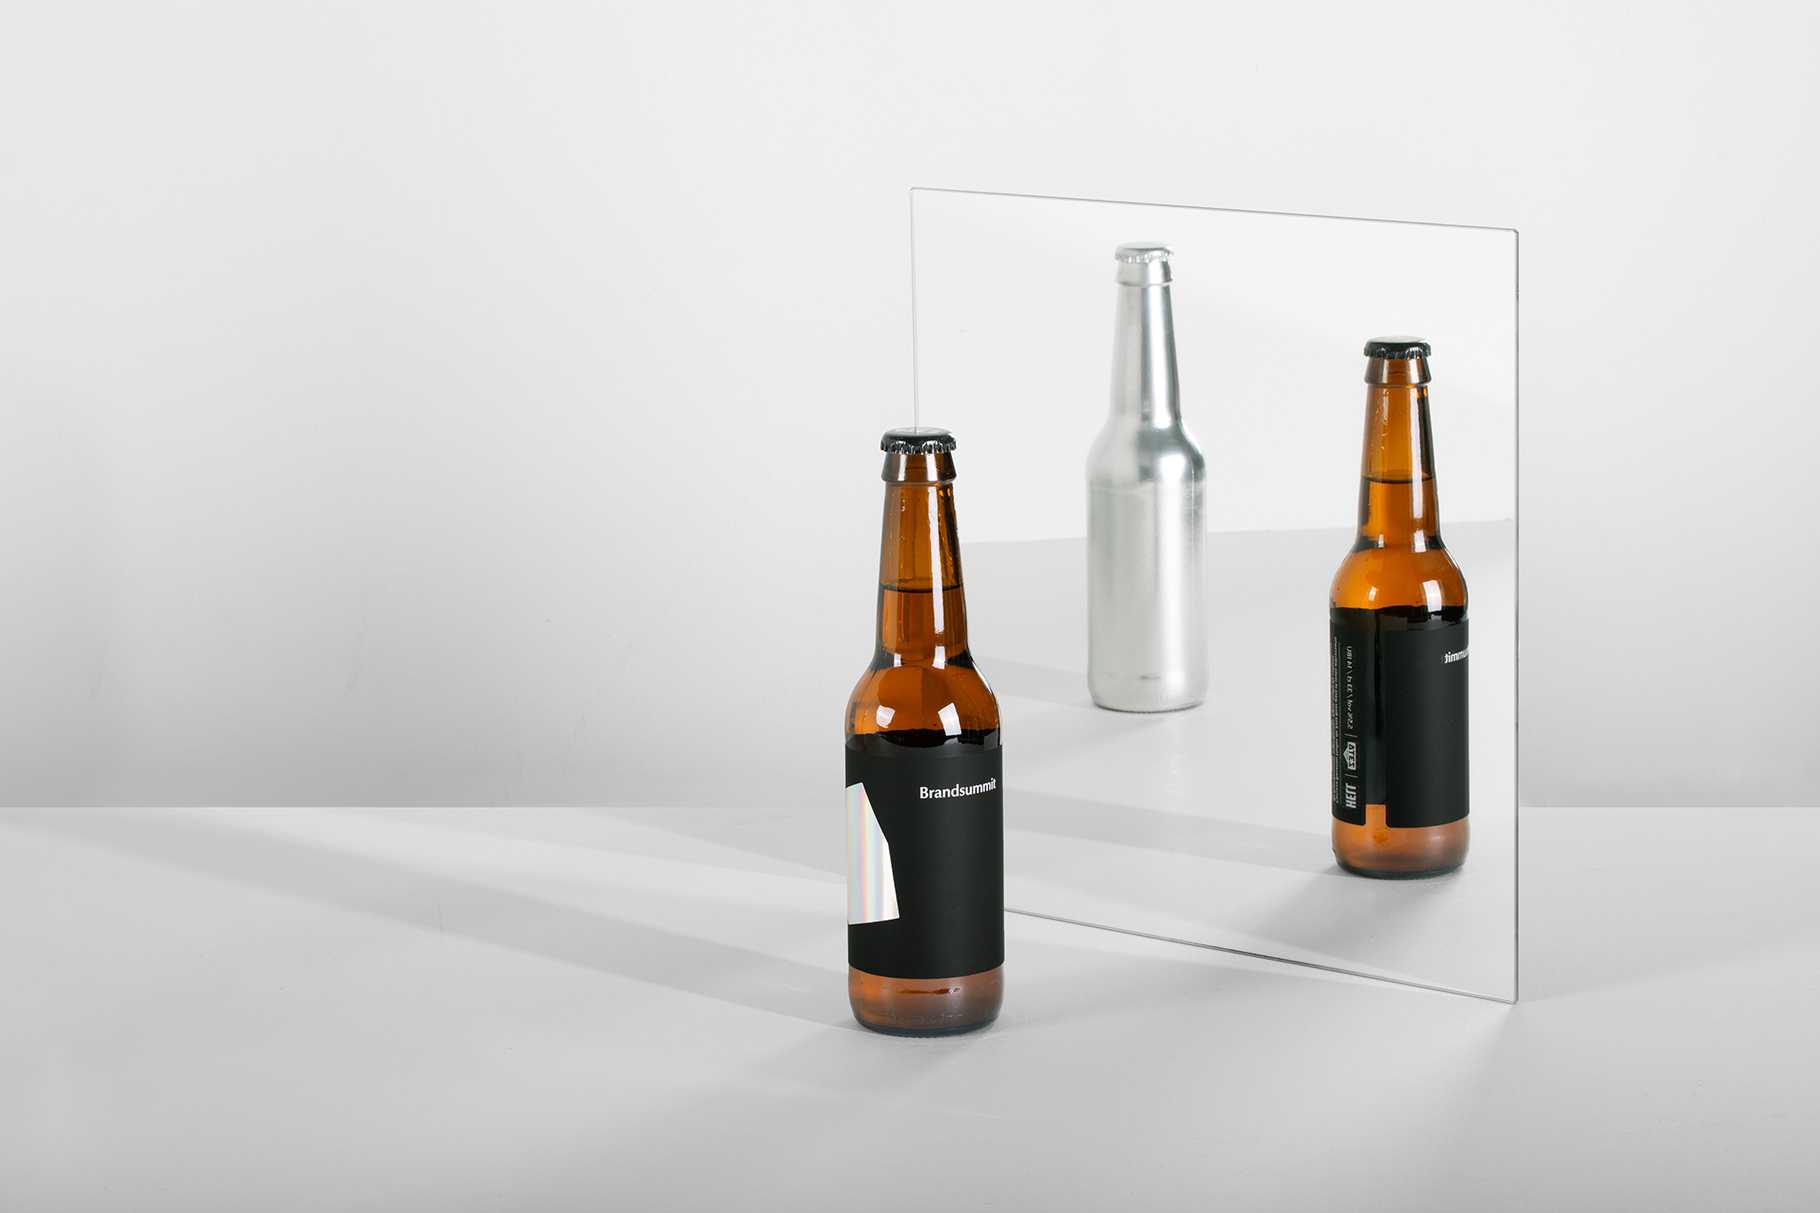 Diseño de packaging (etiqueta) para cerveza conmemorativa del 6 aniversario de Brandsummit.